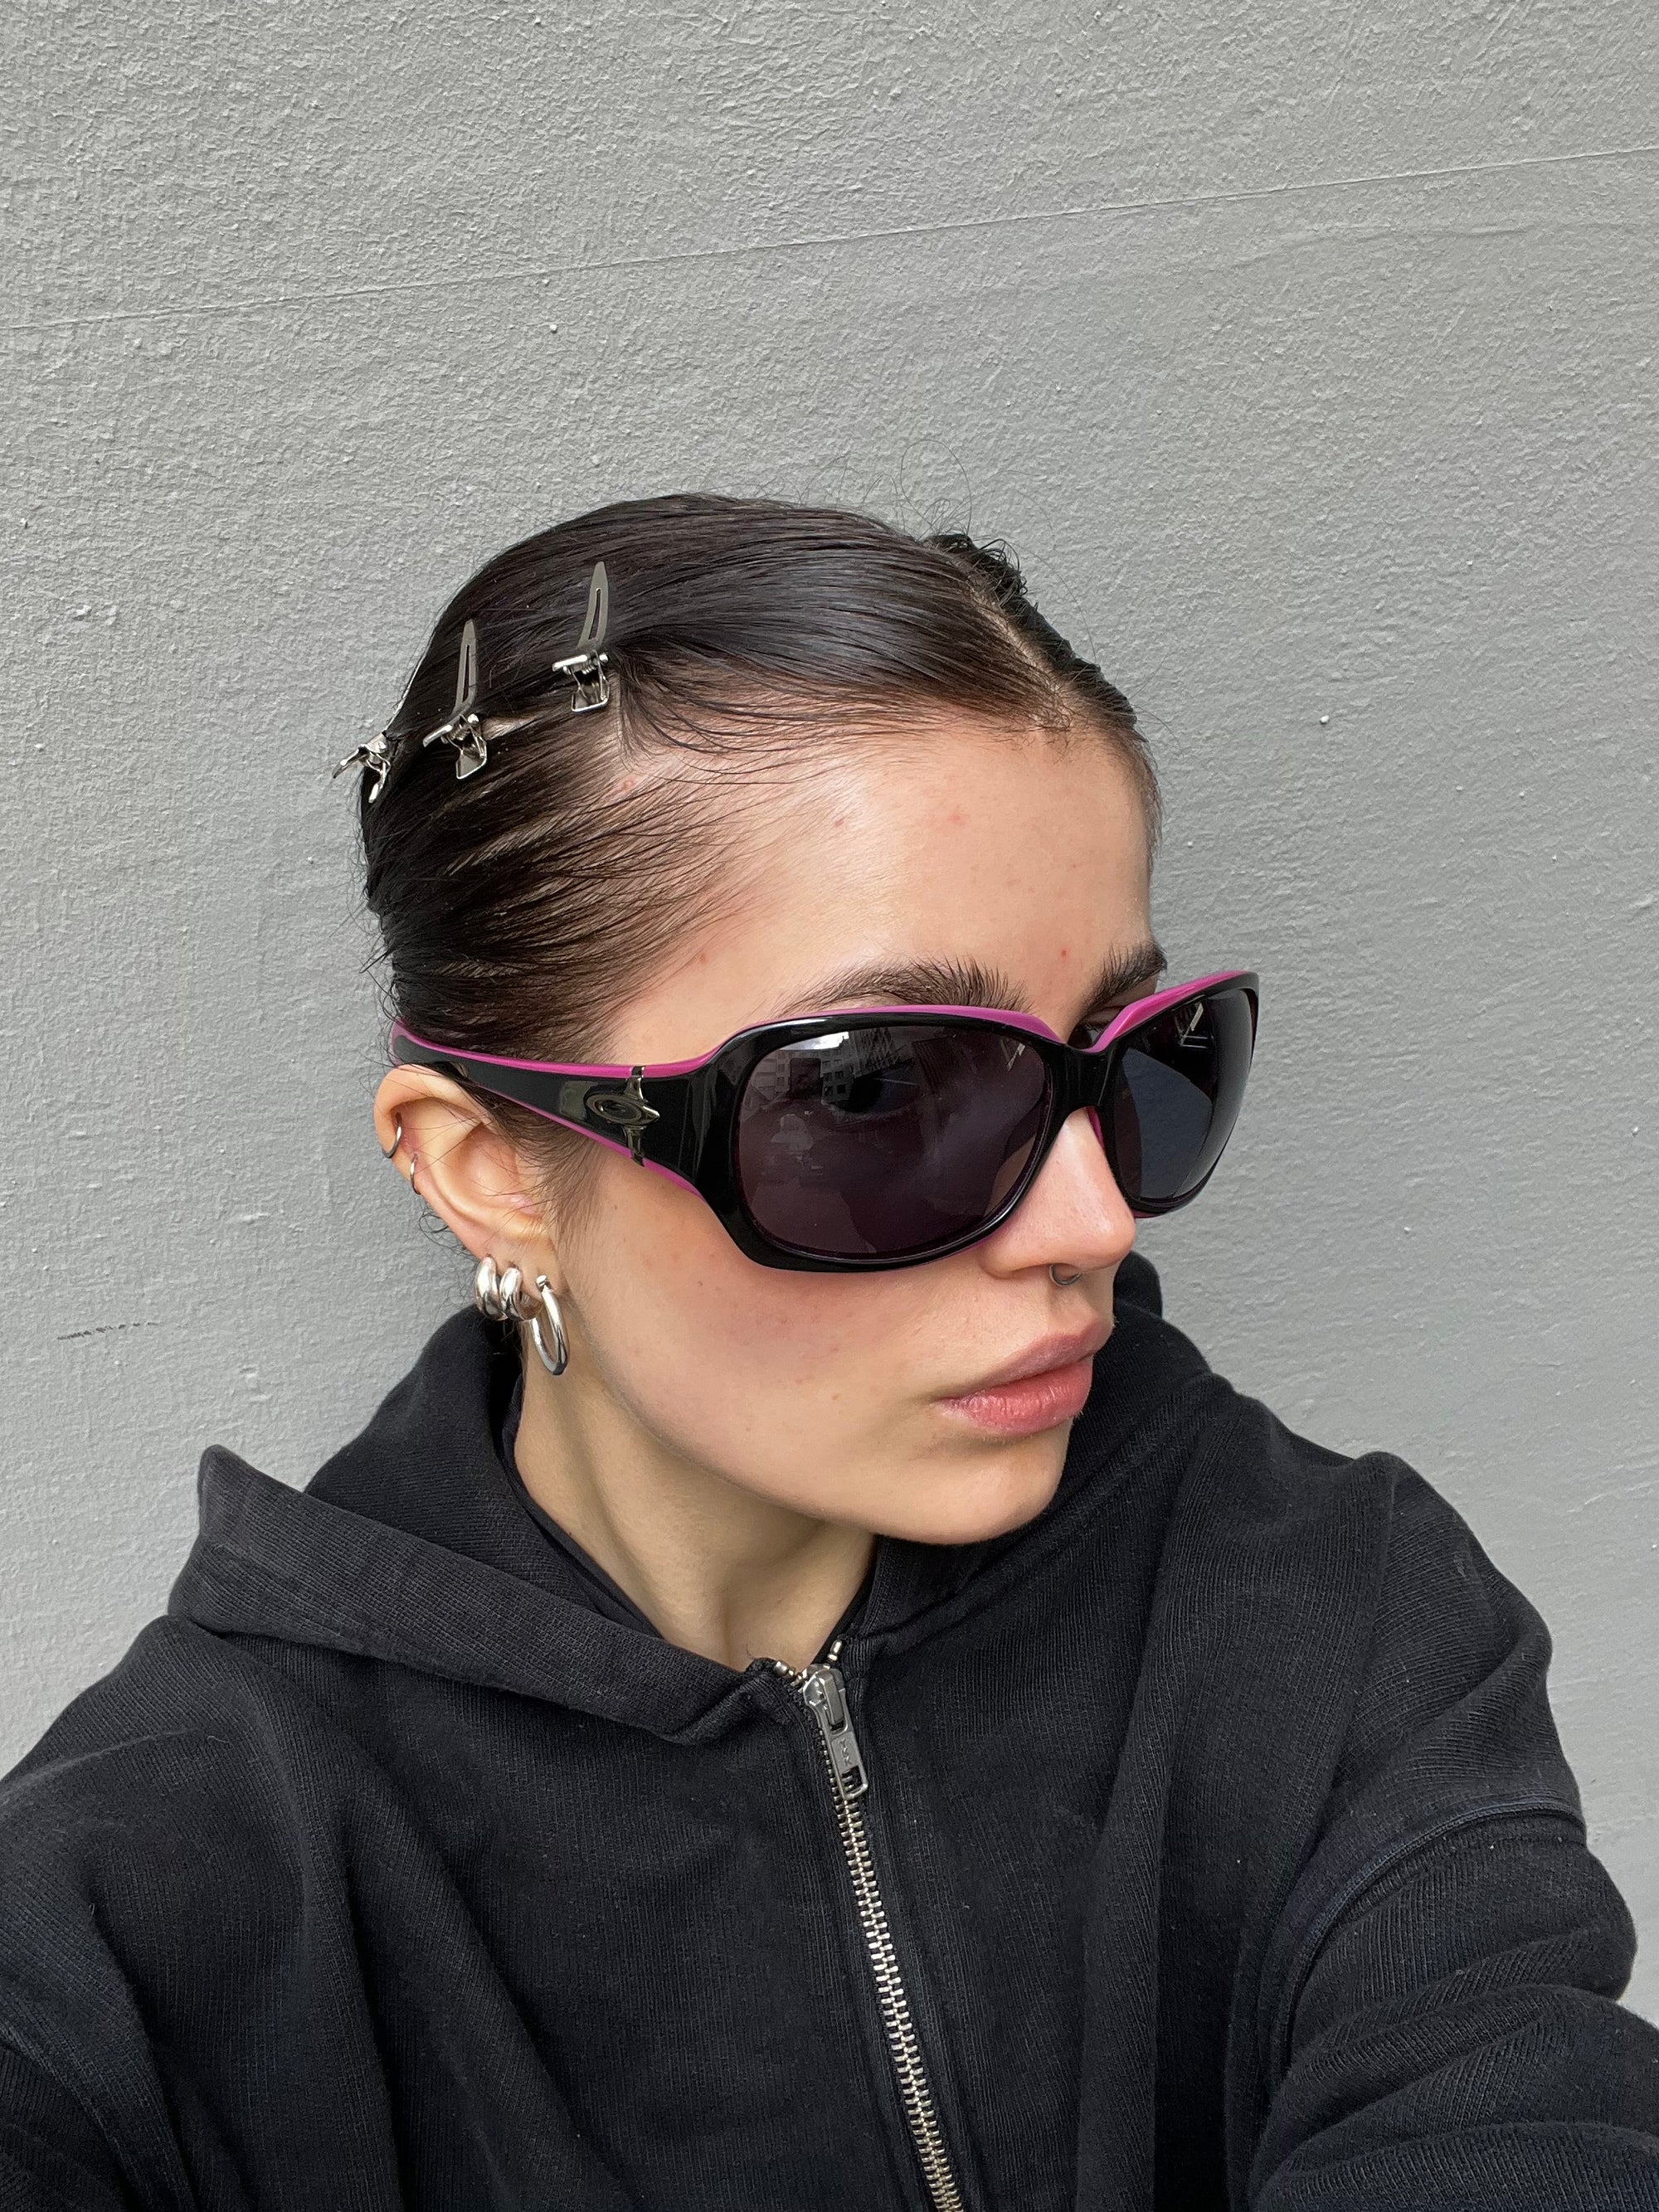 Tragebild der Oakley Sunglasses Black Pink von der Seite